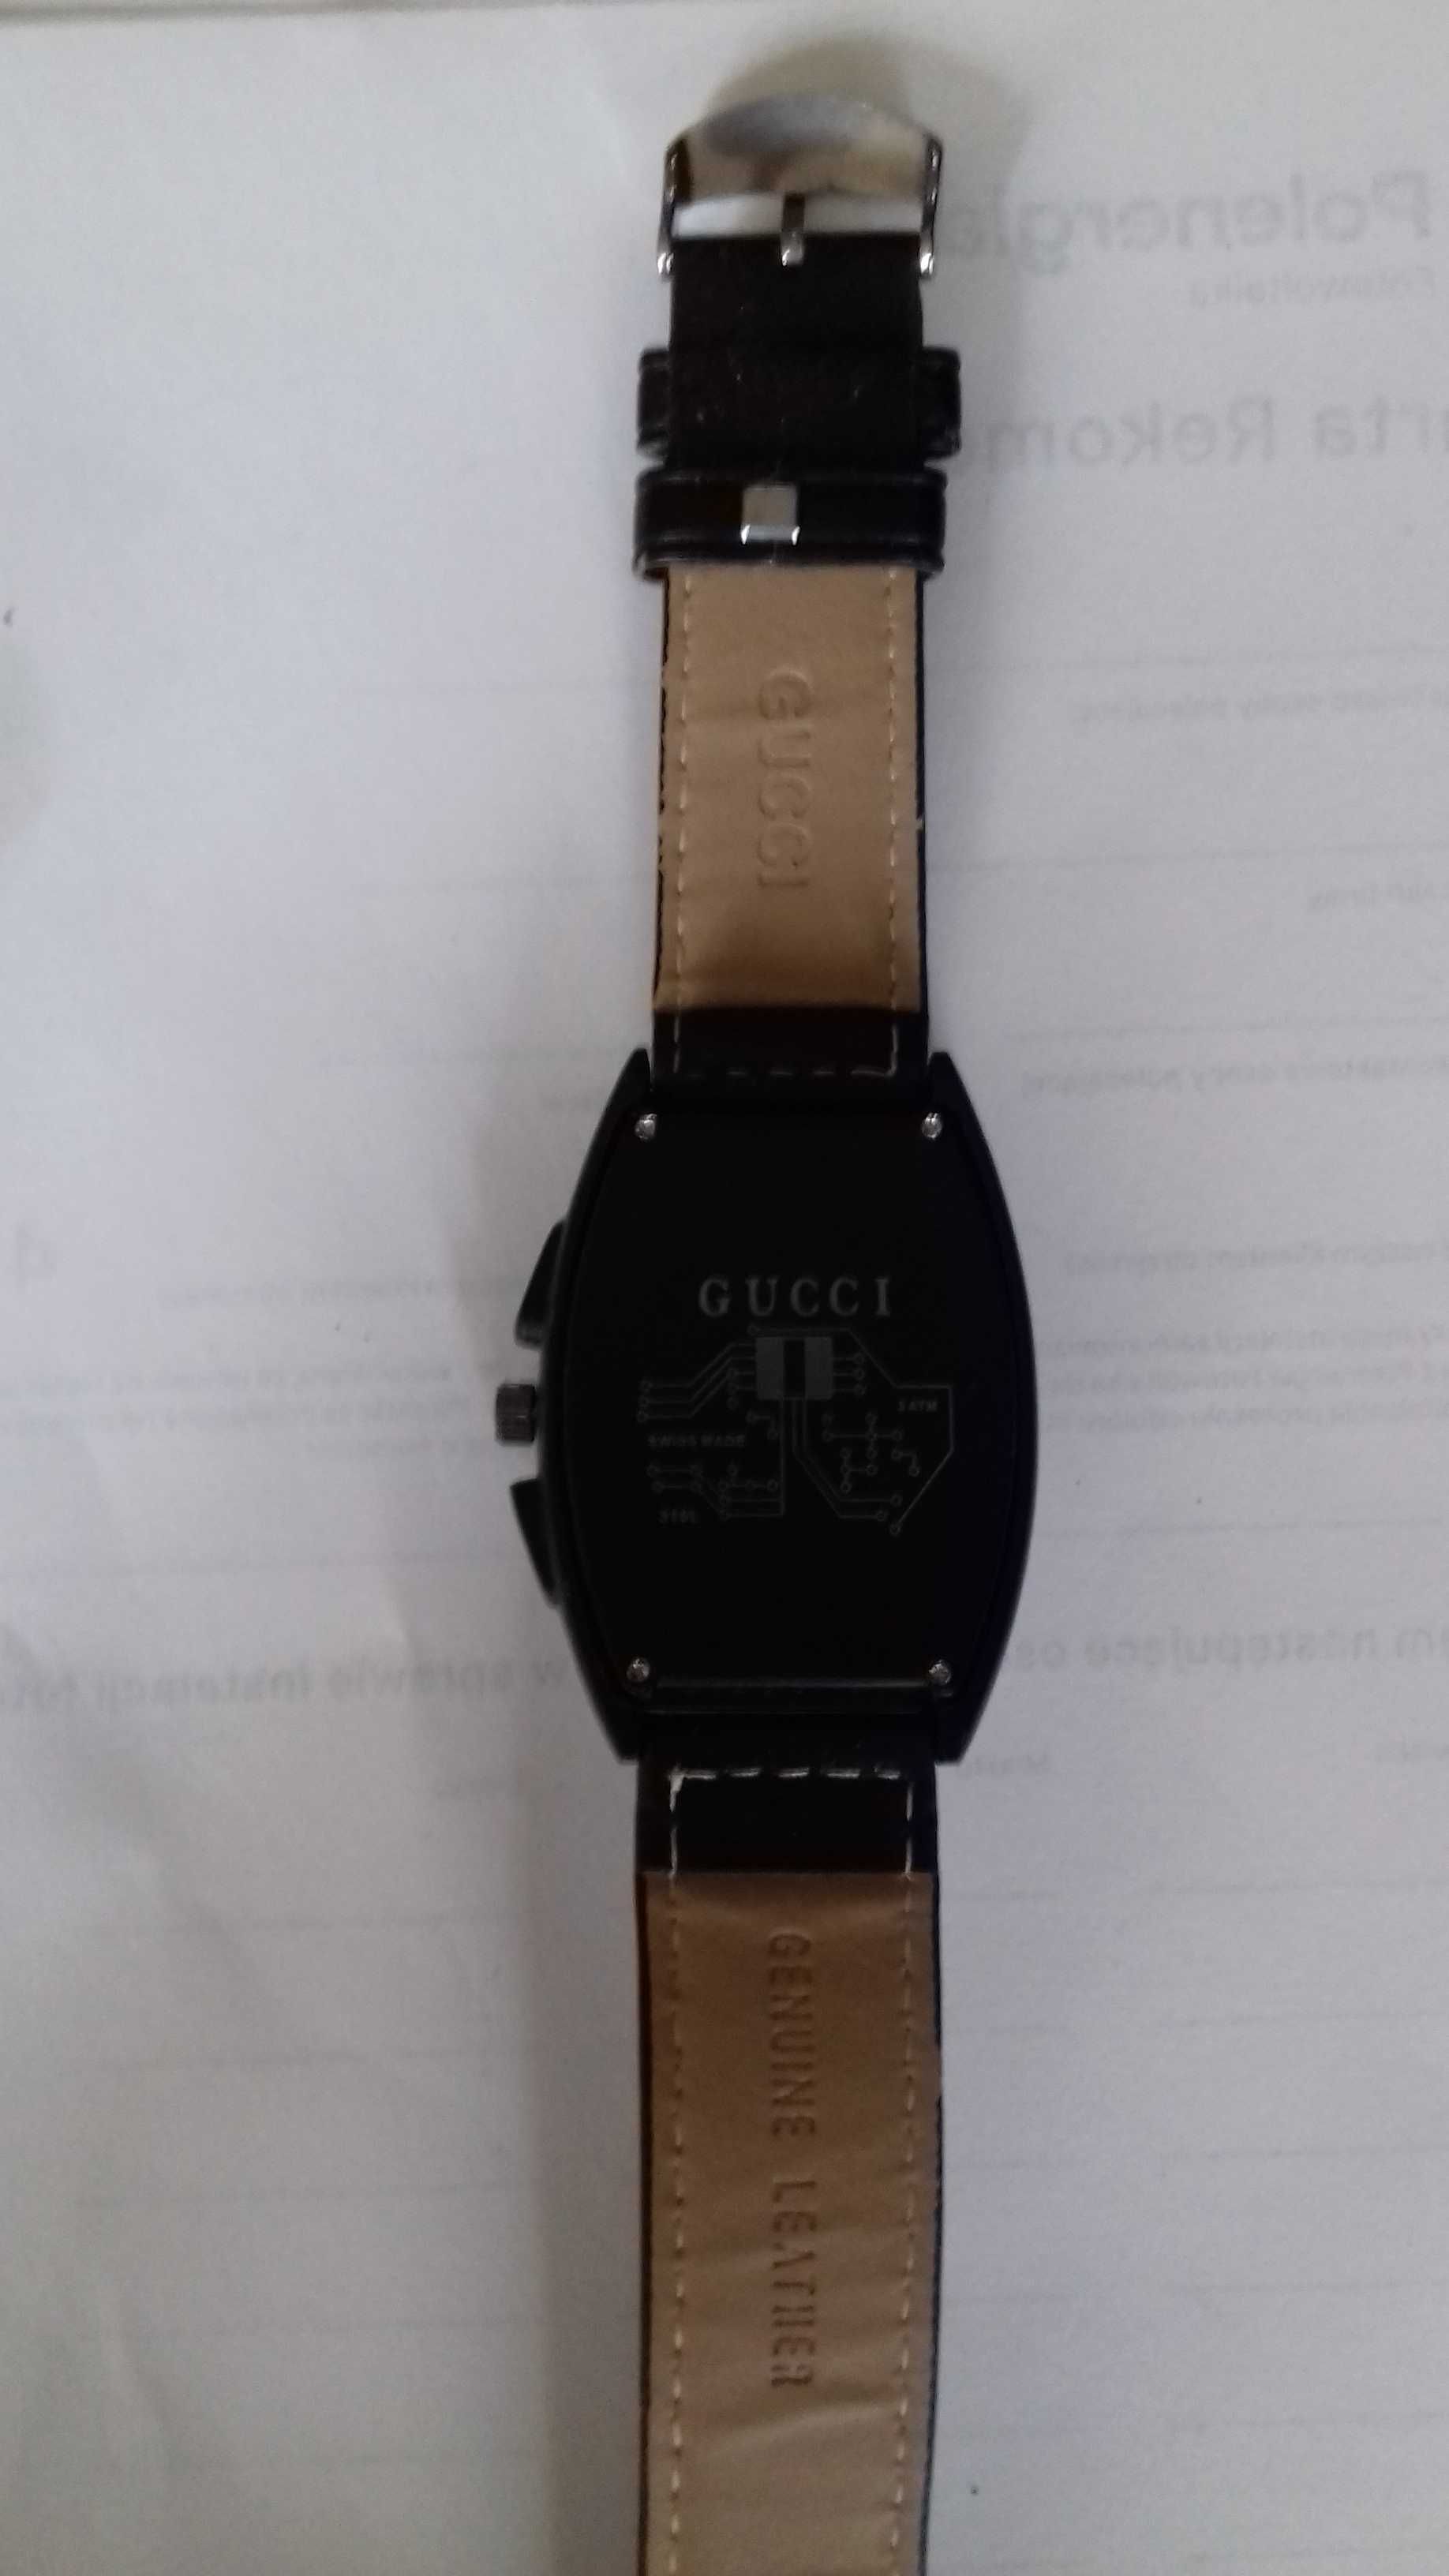 Zegarek męski Gucci czarny z białą tarczą cena 279 zł